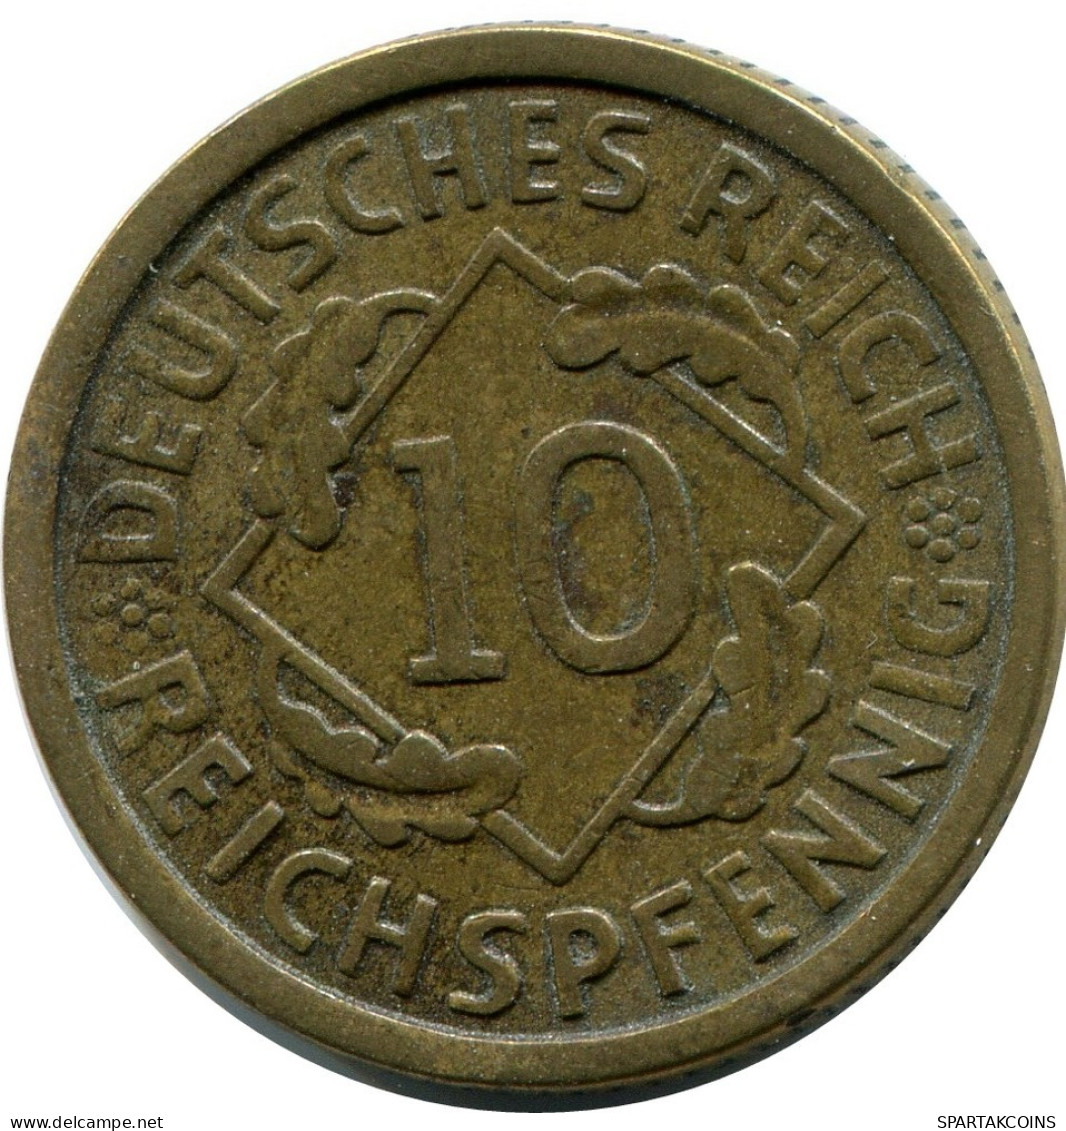 10 REICHSPFENNIG 1926 A DEUTSCHLAND Münze GERMANY #DB939.D.A - 10 Rentenpfennig & 10 Reichspfennig